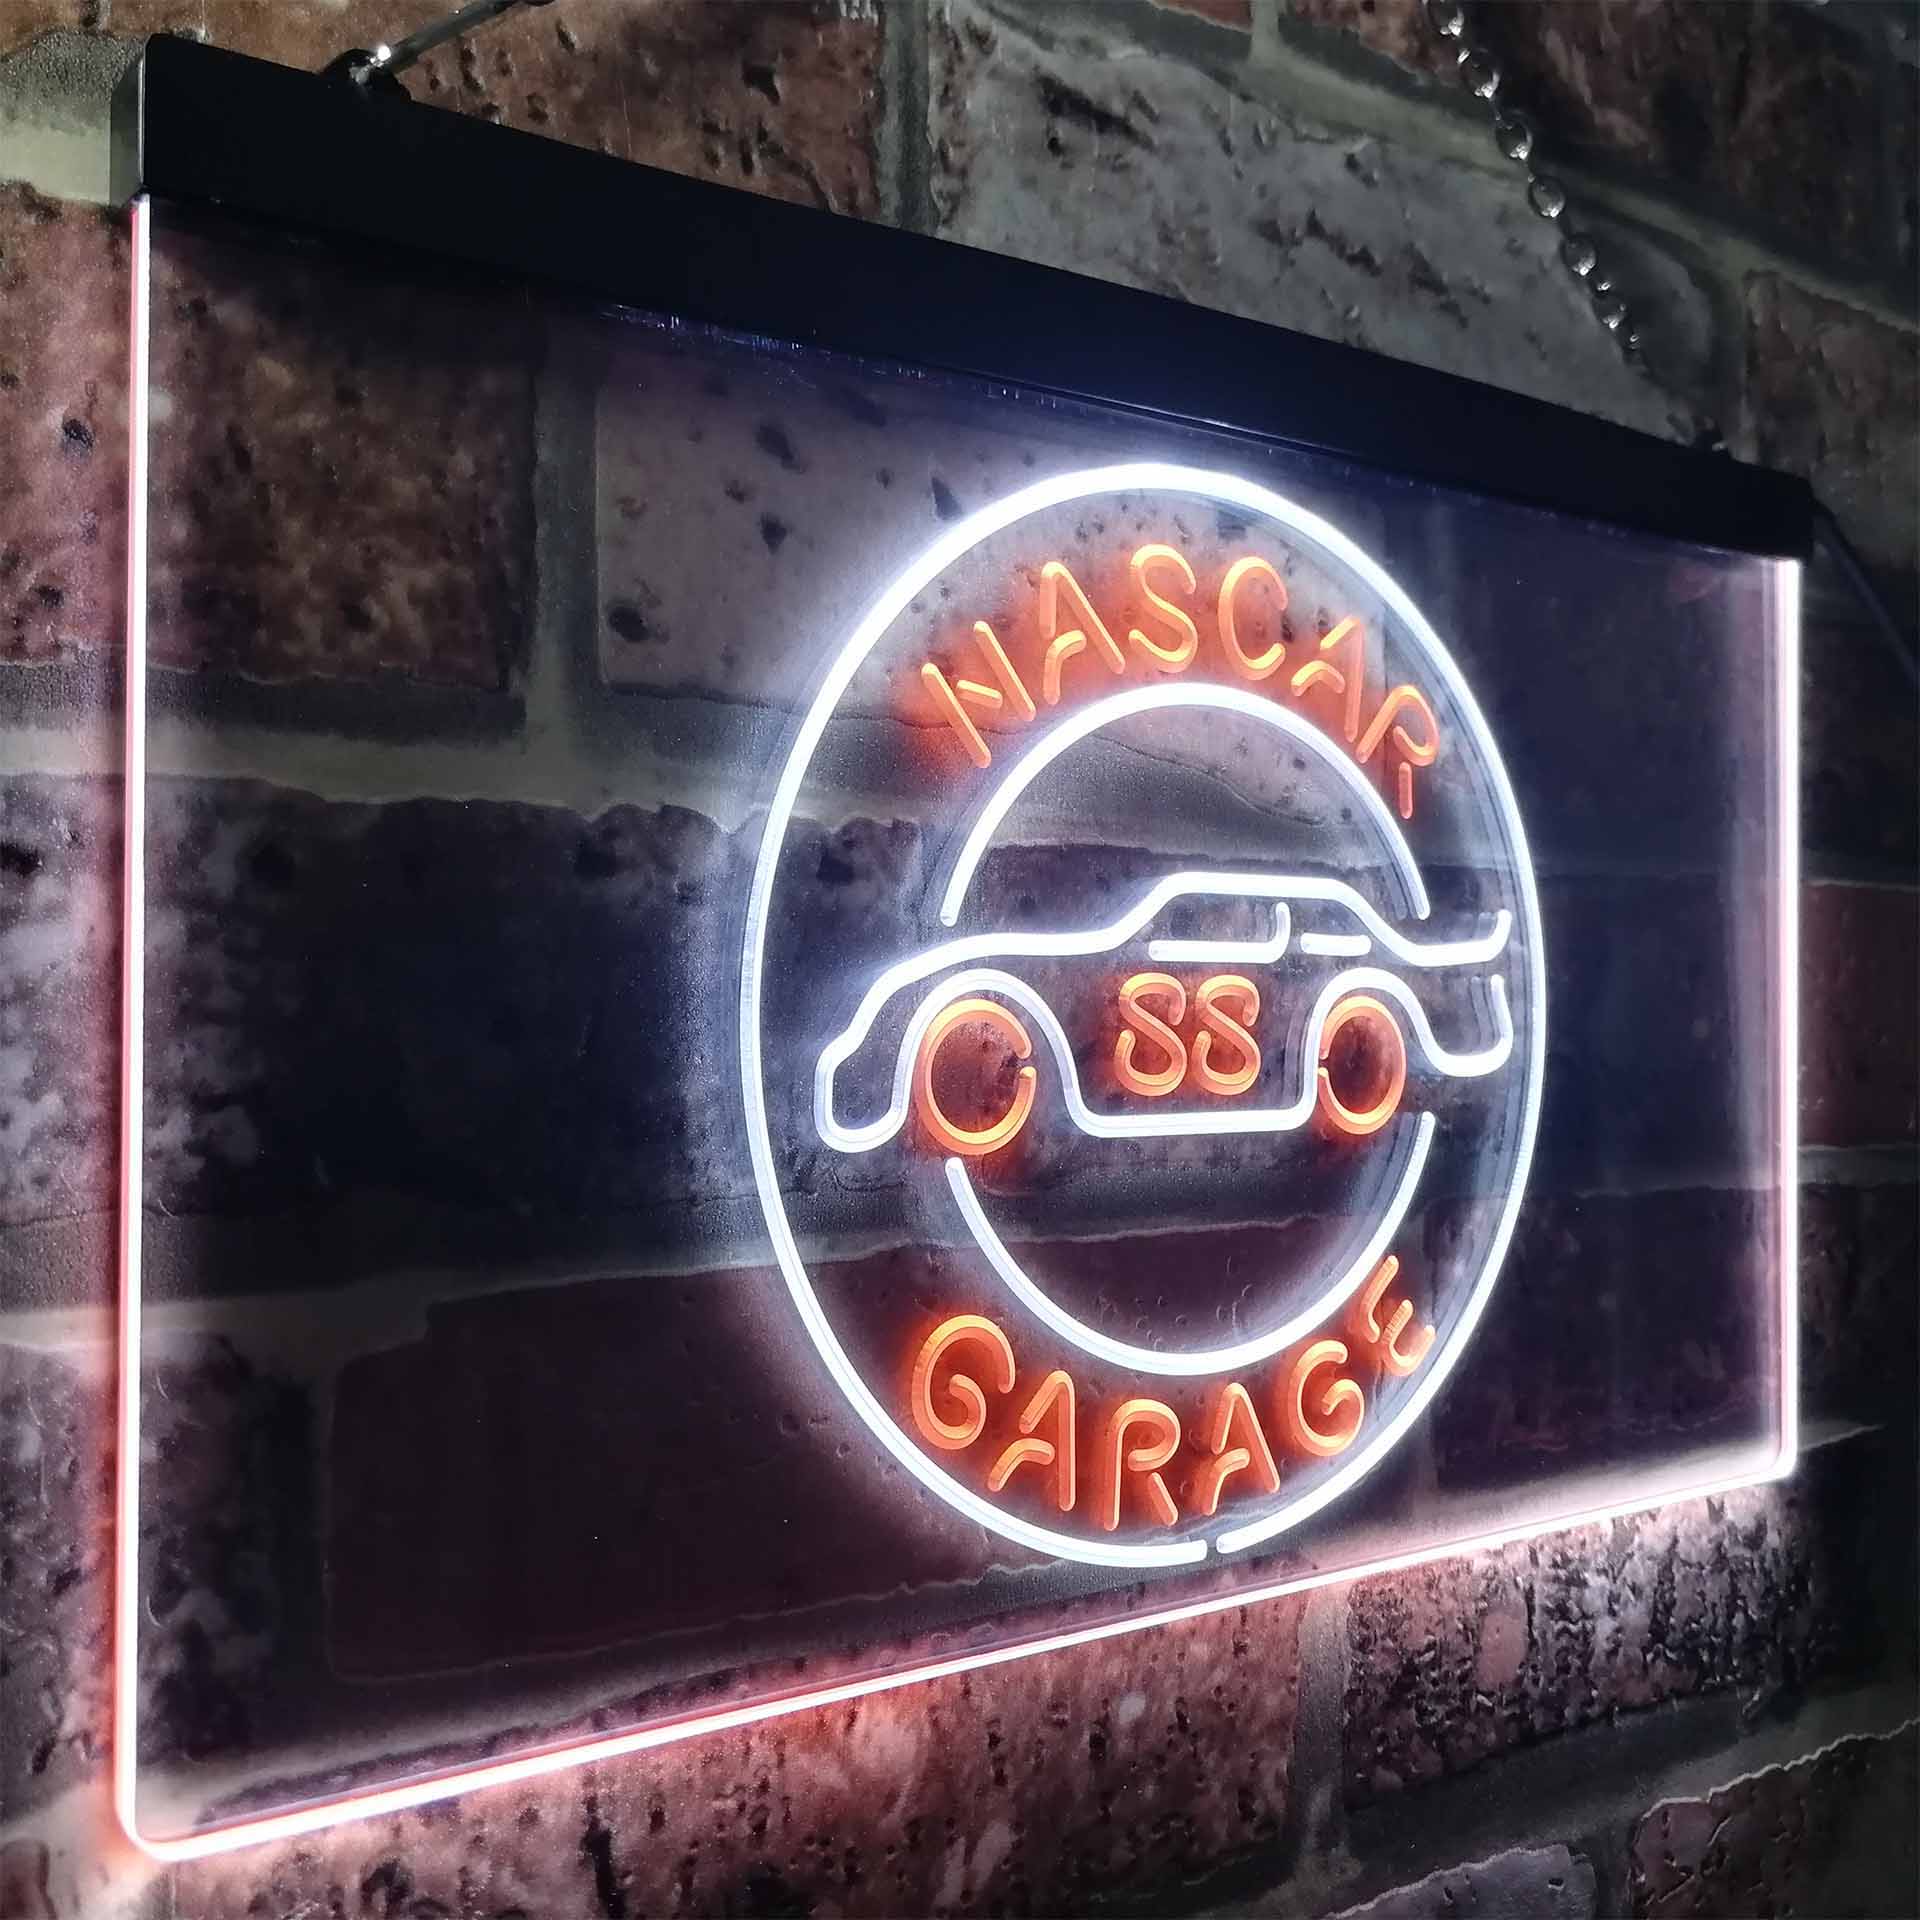 Nascar 88 Garage Dale Jr. League Club Man Cave Neon Sign